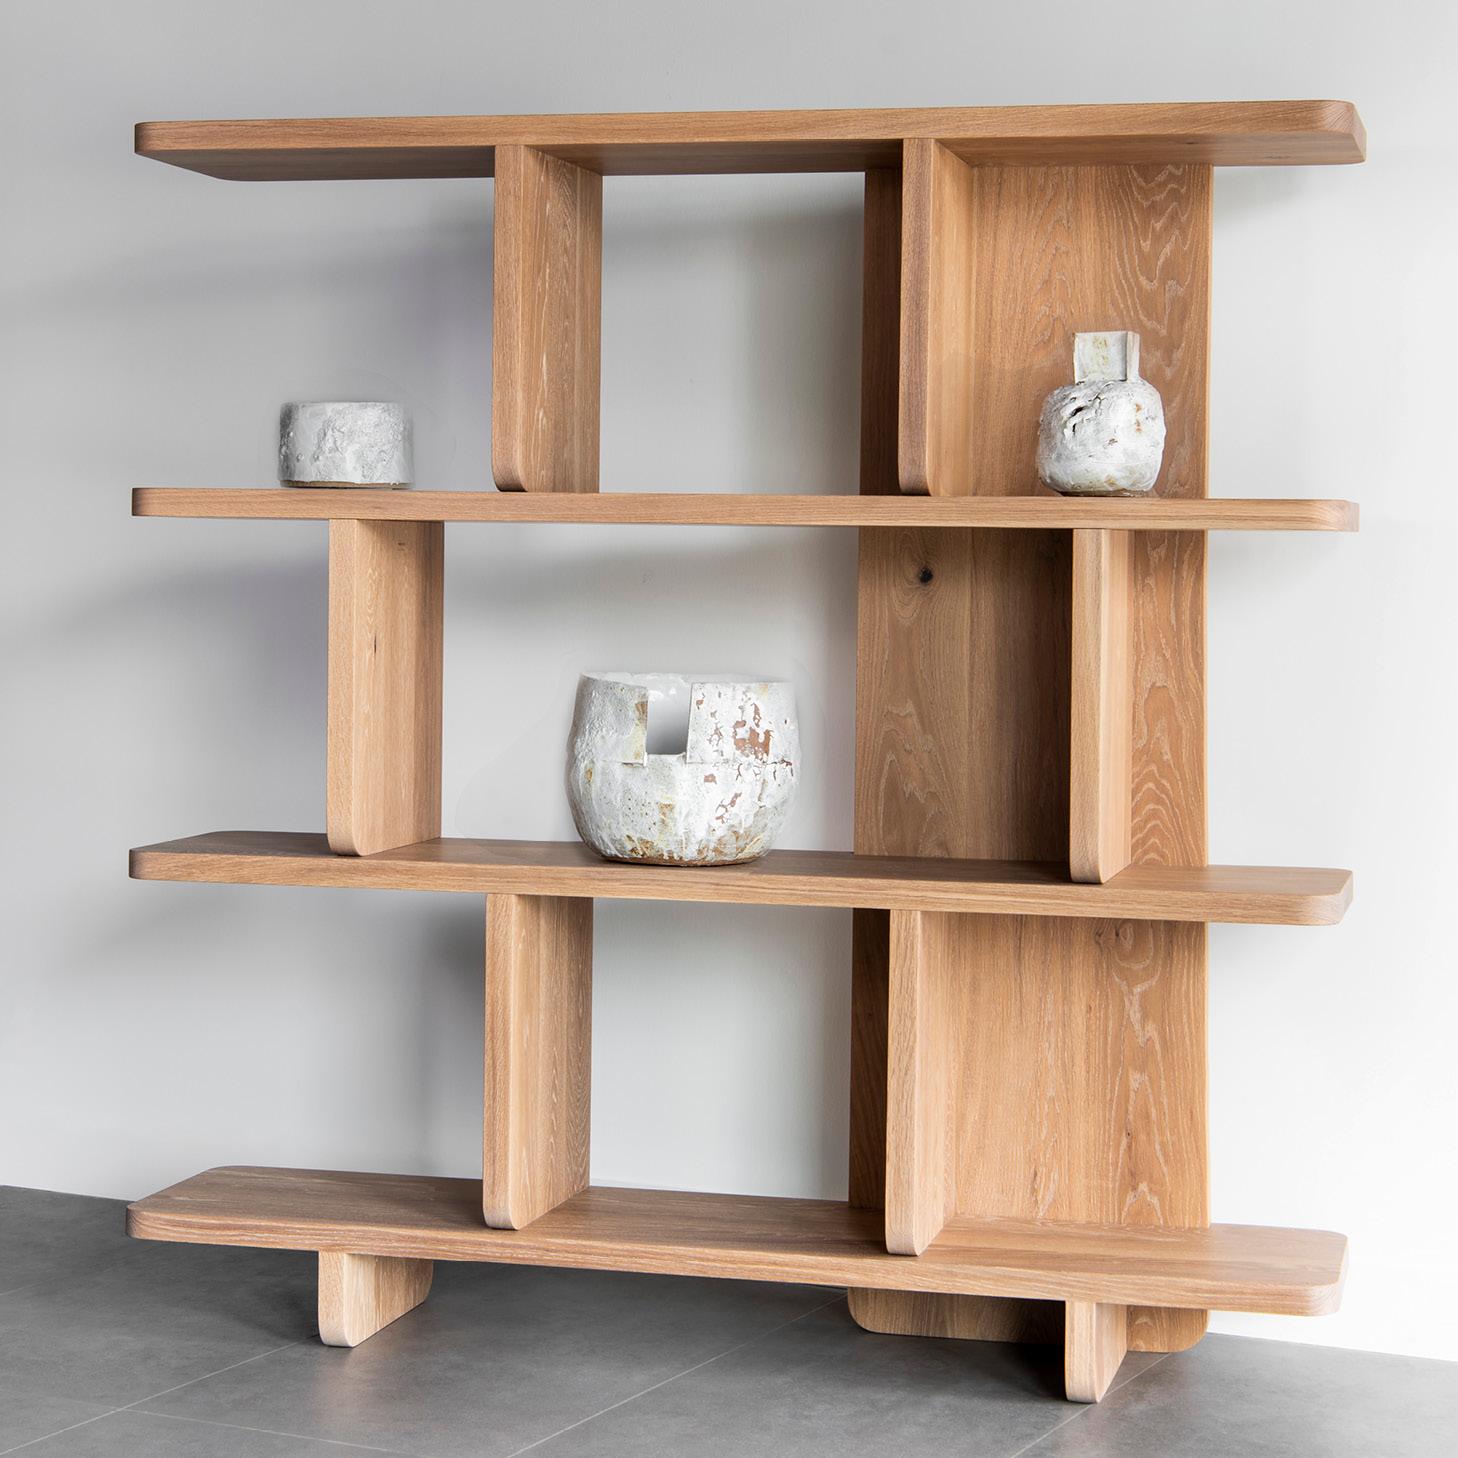 Die Provide Series Furniture Collection wurde in Collaboration mit David Keeler von Provide und Lock & Mortice entwickelt. Die Provide Series ist eine unverwechselbare Kollektion von Massivholzmöbeln für modernes Wohnen. 

Lock & Mortice ist ein in